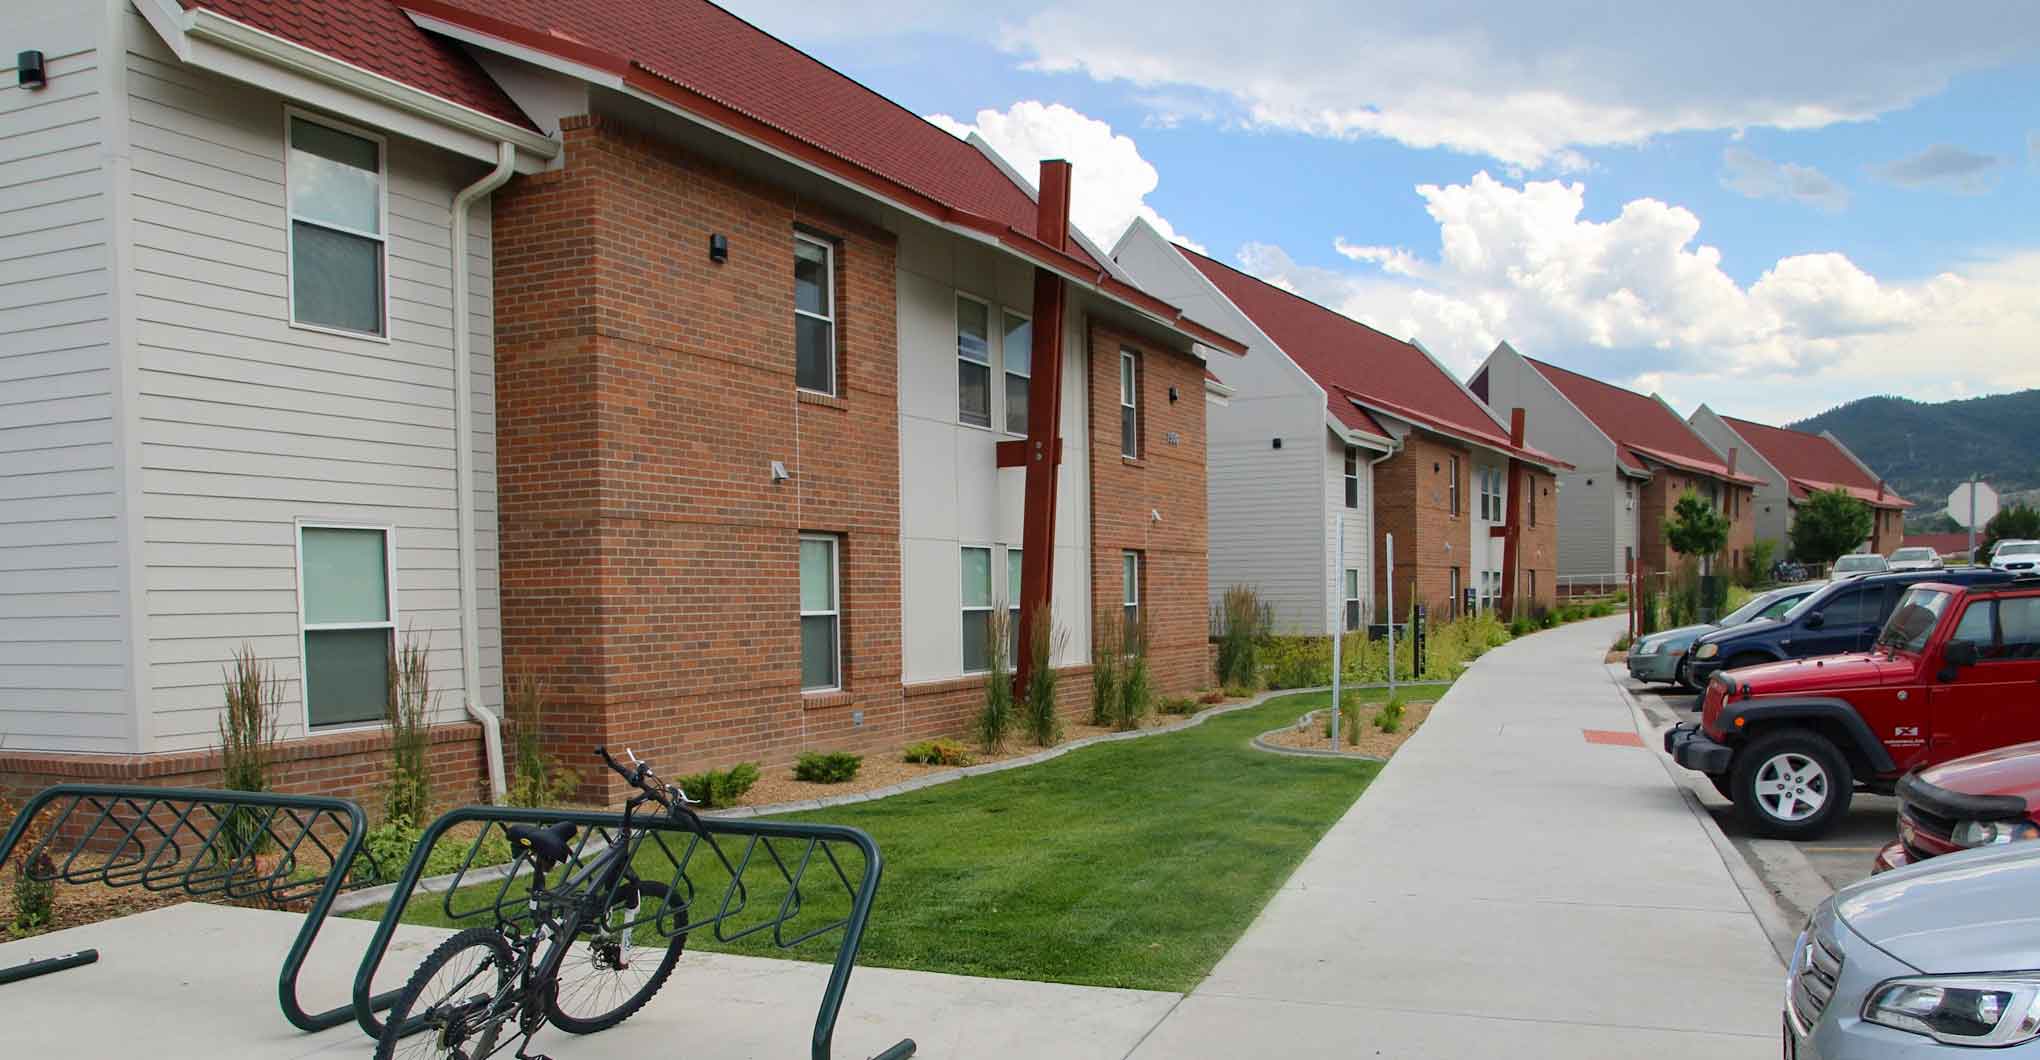 Campus Apartments